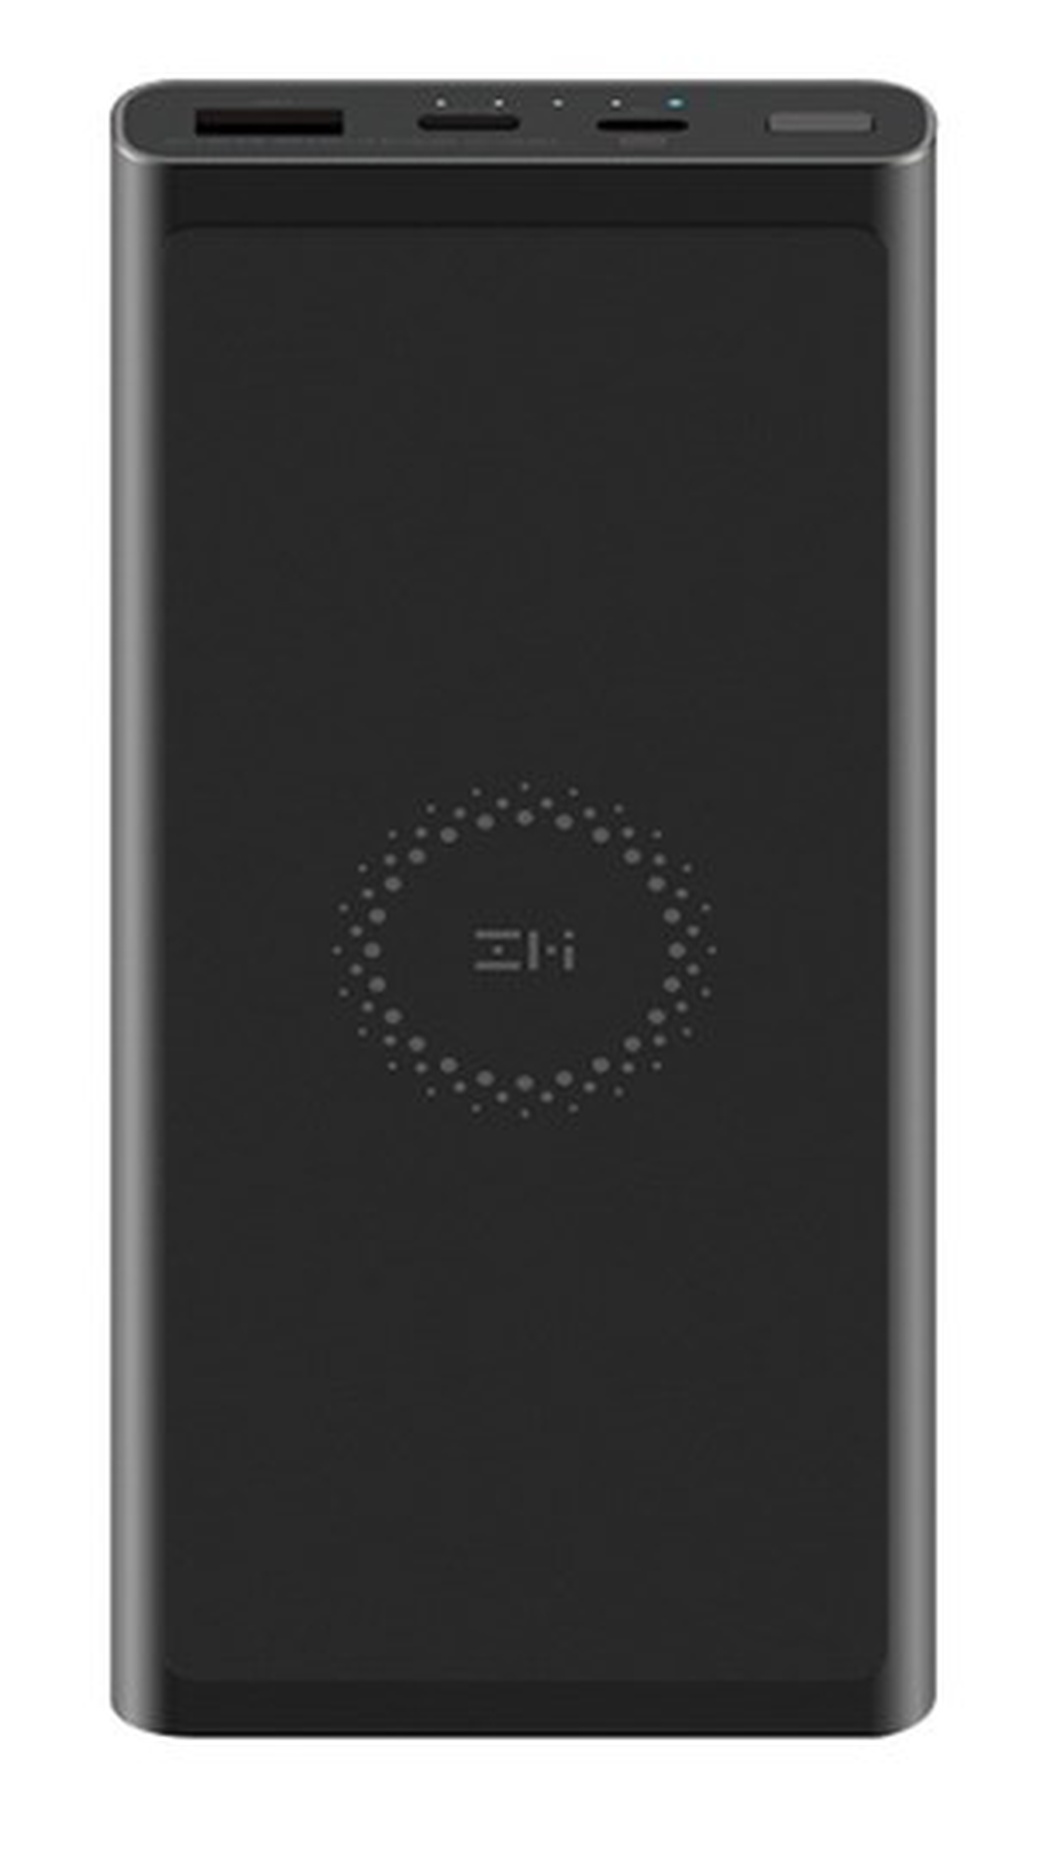 Внешний аккумулятор с поддержкой беспроводной зарядки Xiaomi Mi ZMI Wireless Charger 10000mAh (WPB100 Black) черный фото